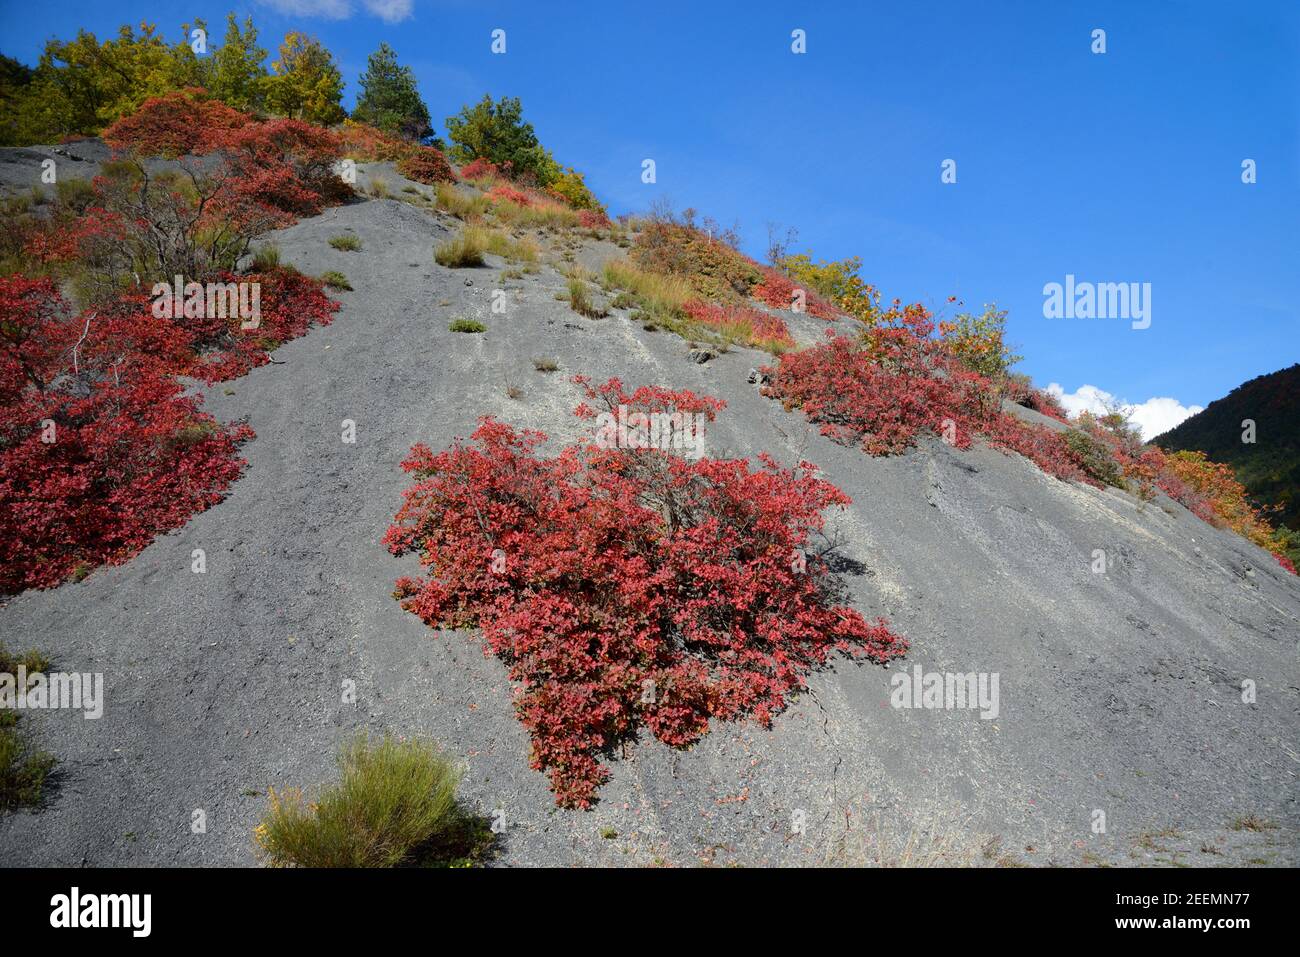 Rote Herbstfarben oder Herbstfarben von Smoke Tree, Cotinus coggygria, wachsen auf Black Merl Formationen, die als Robines Alpes-de-Haute-Provence France bekannt sind Stockfoto